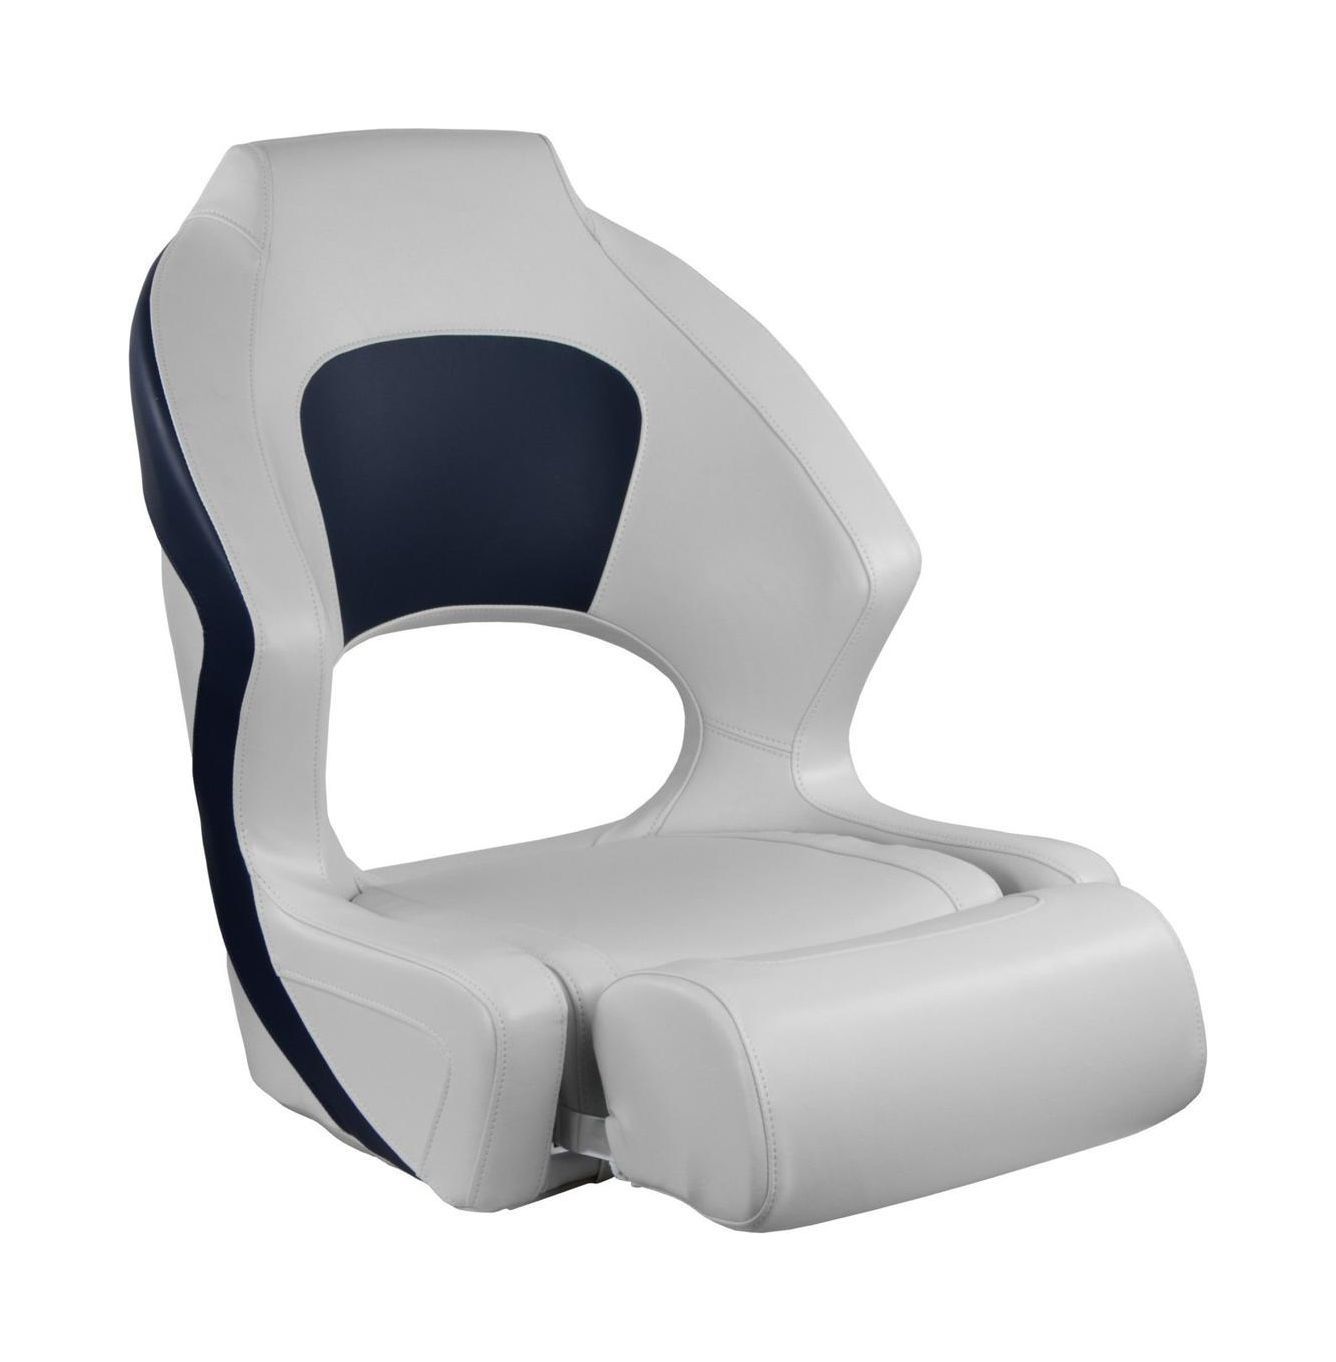 Кресло мягкое Deluxe Sport, с откидным валиком, белый/синий 1043251 кресло складное мягкое sport с высокой спинкой синий серый 1040513